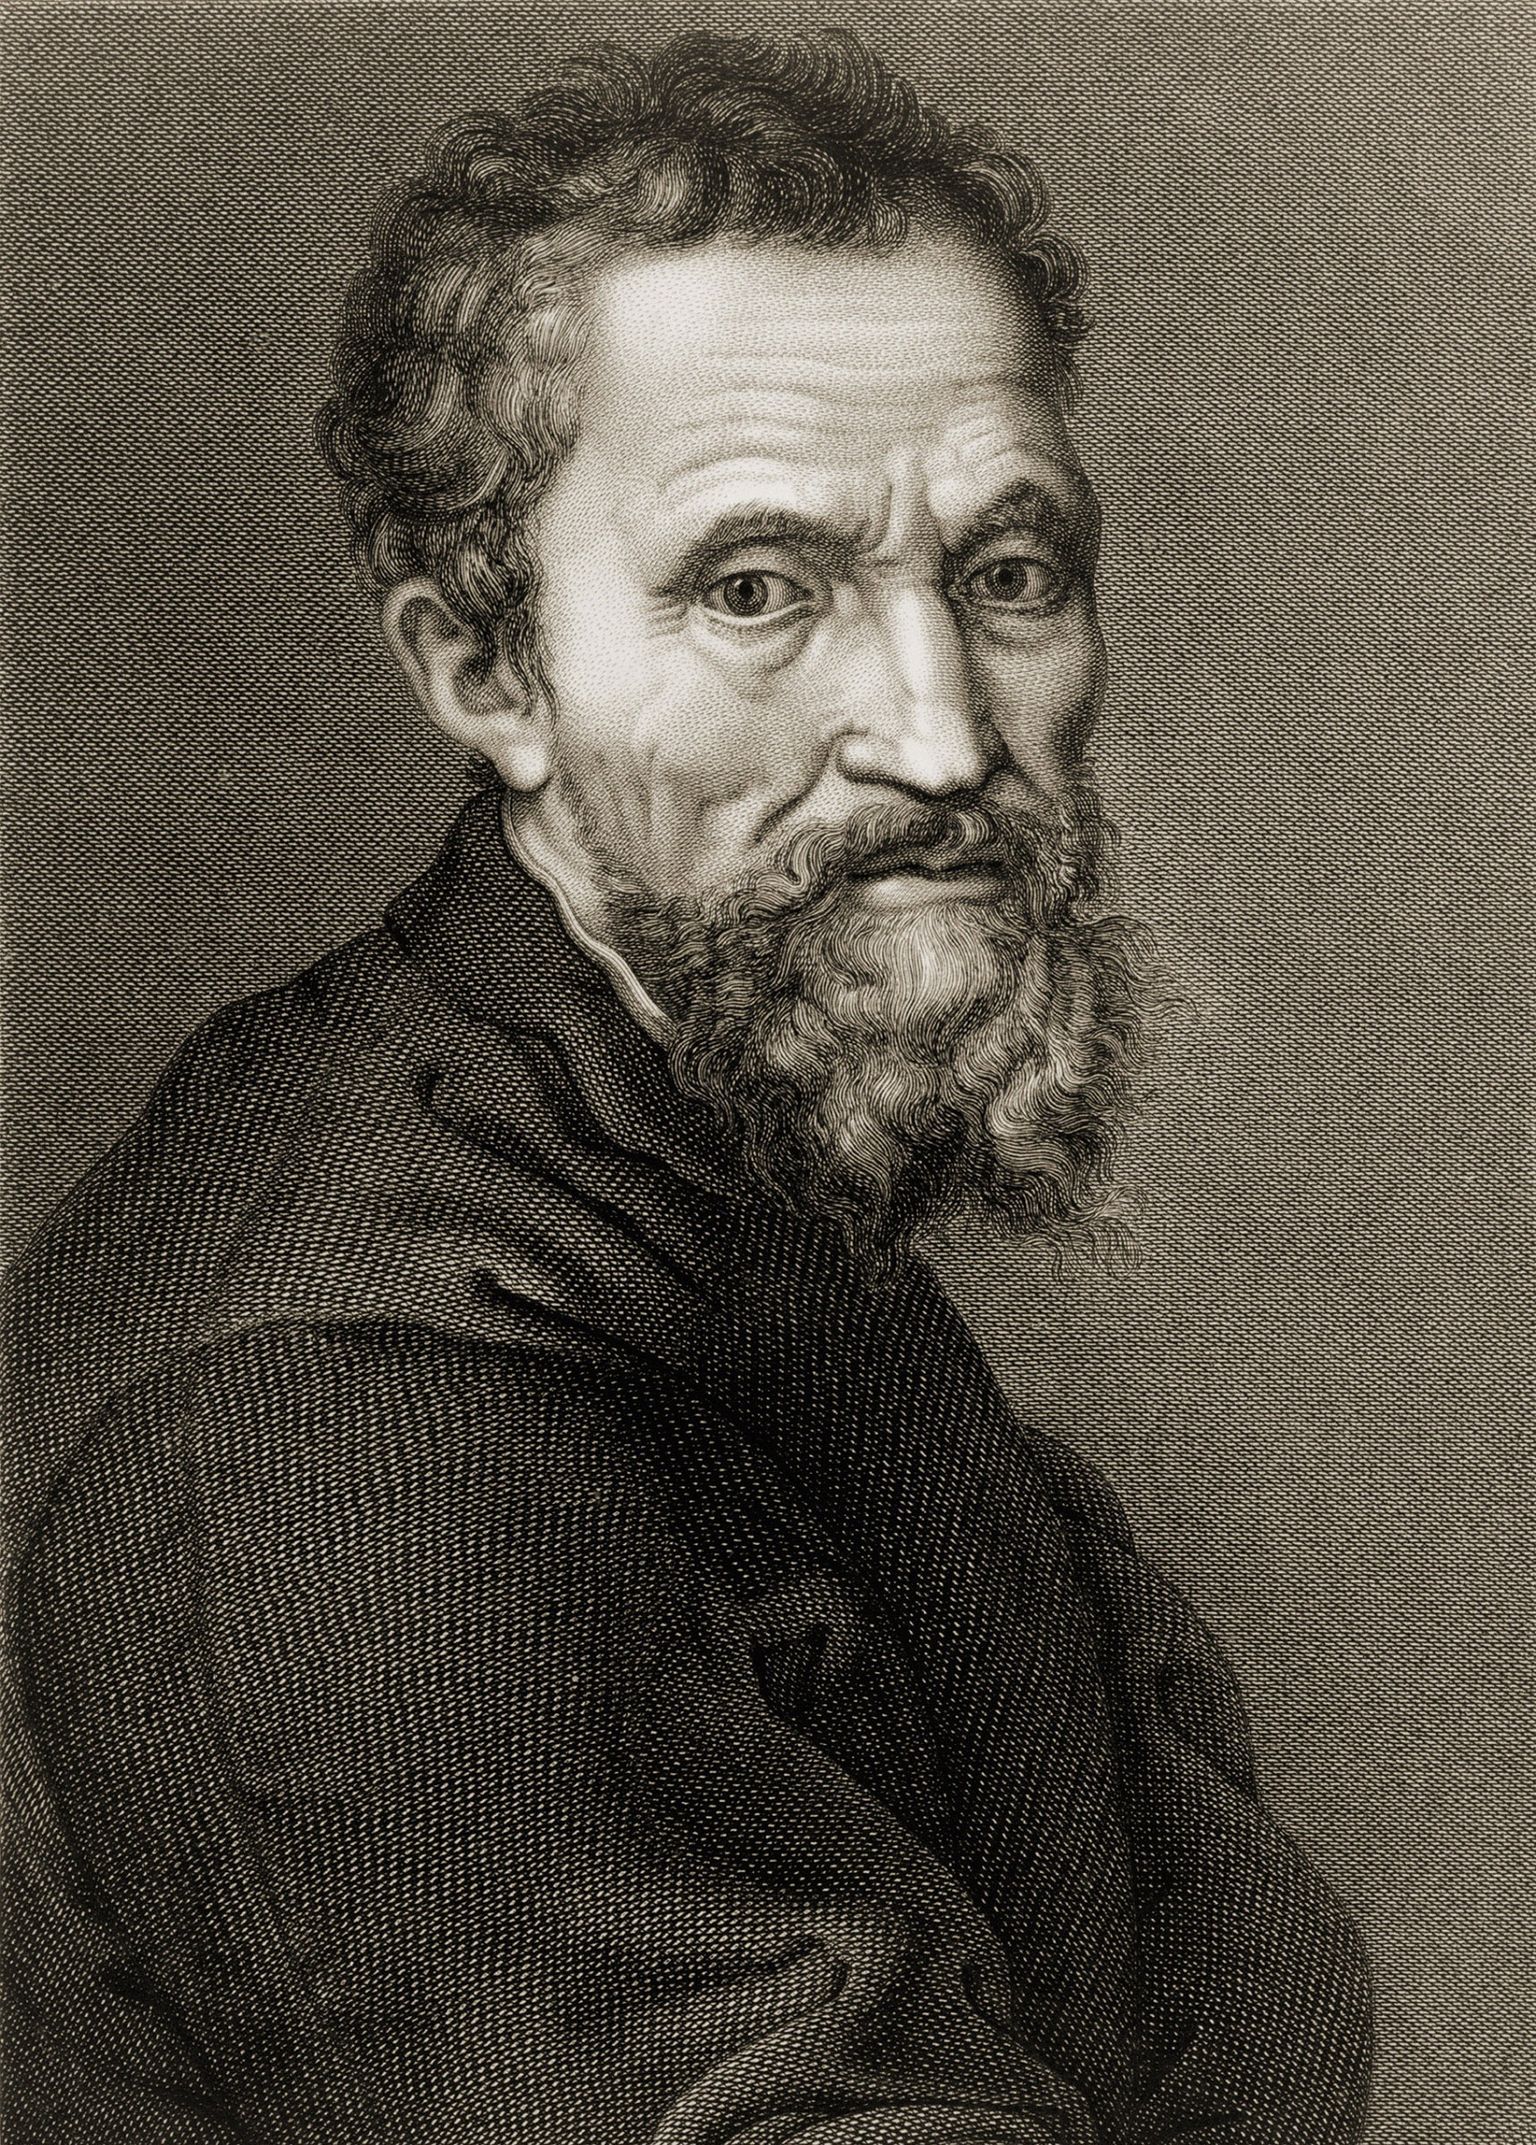 Itaalia renessansikunstnik,  arhitekt, skulptor ja luuletaja Michelangelo Buonarroti (1475-1564)